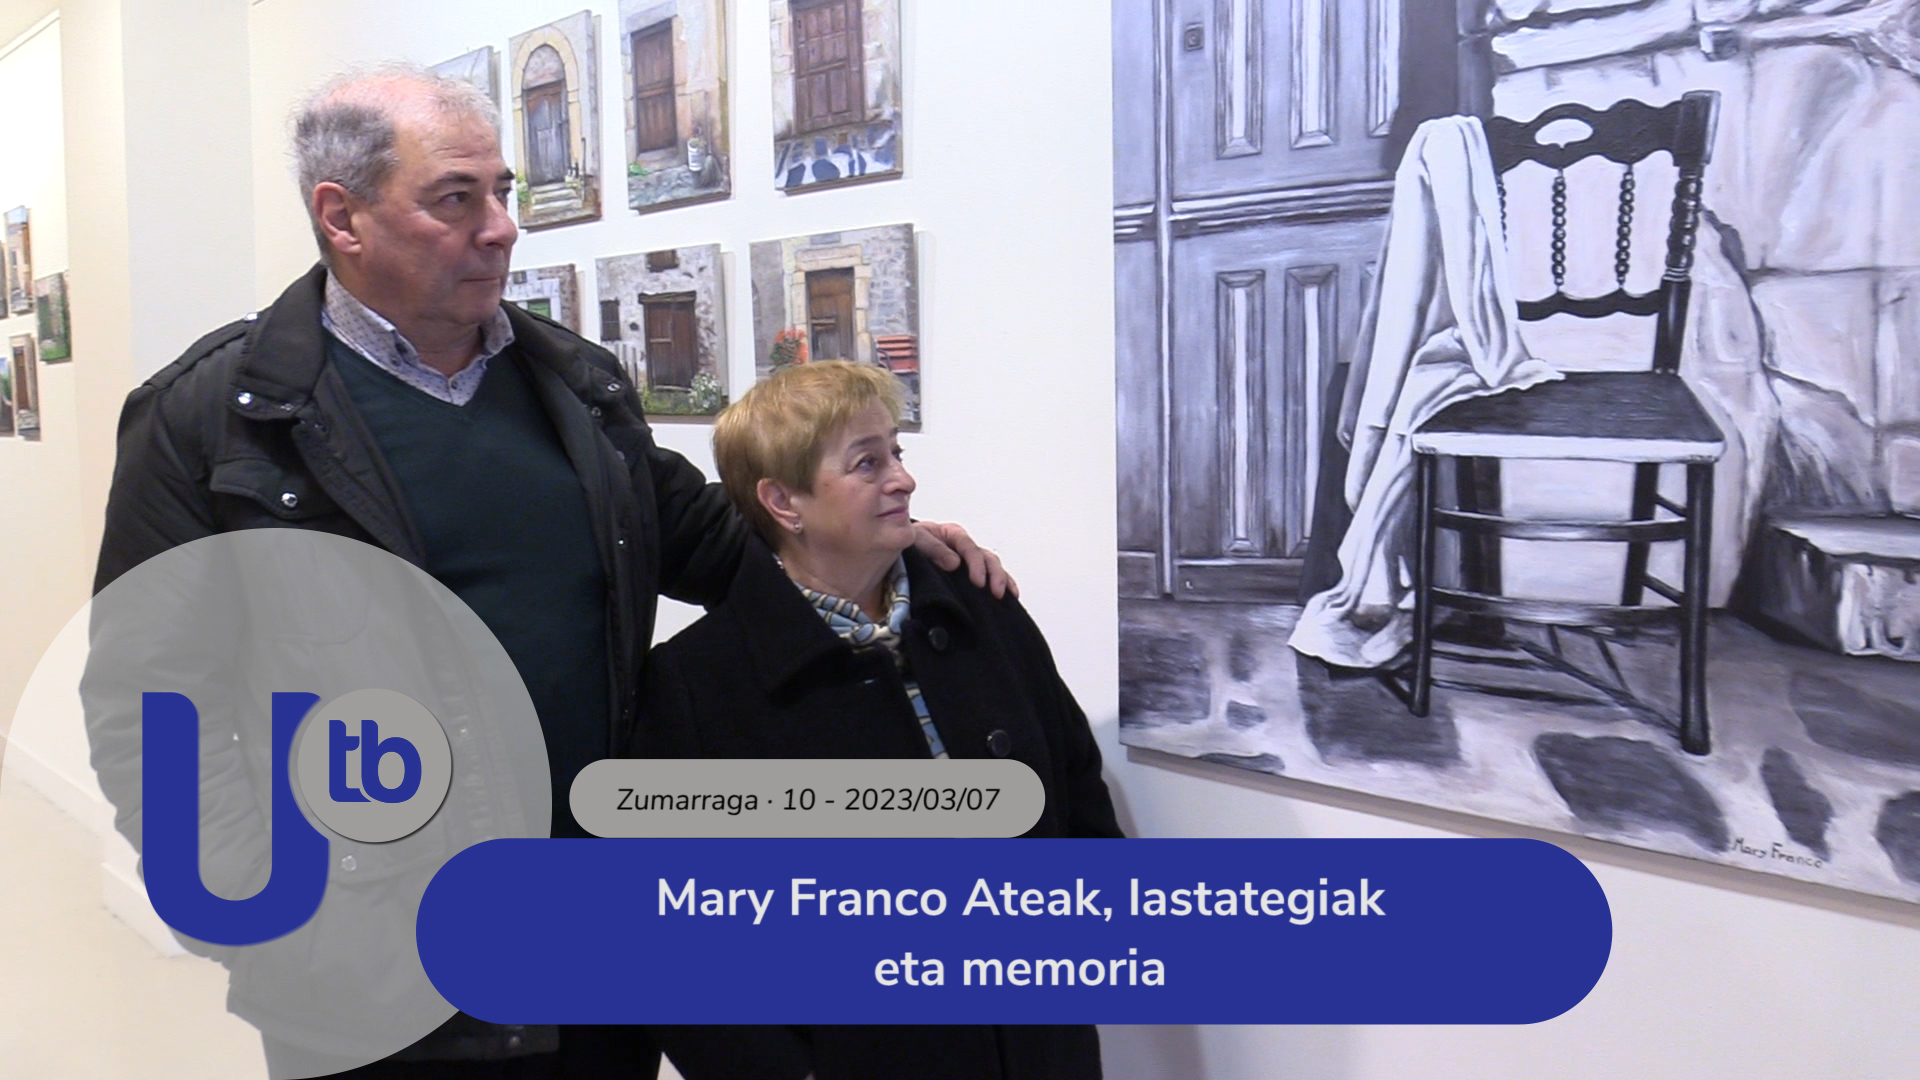 Mary Franco Puertas, pajares y memoria / Mary Franco Ateak, lastategiak eta memoria